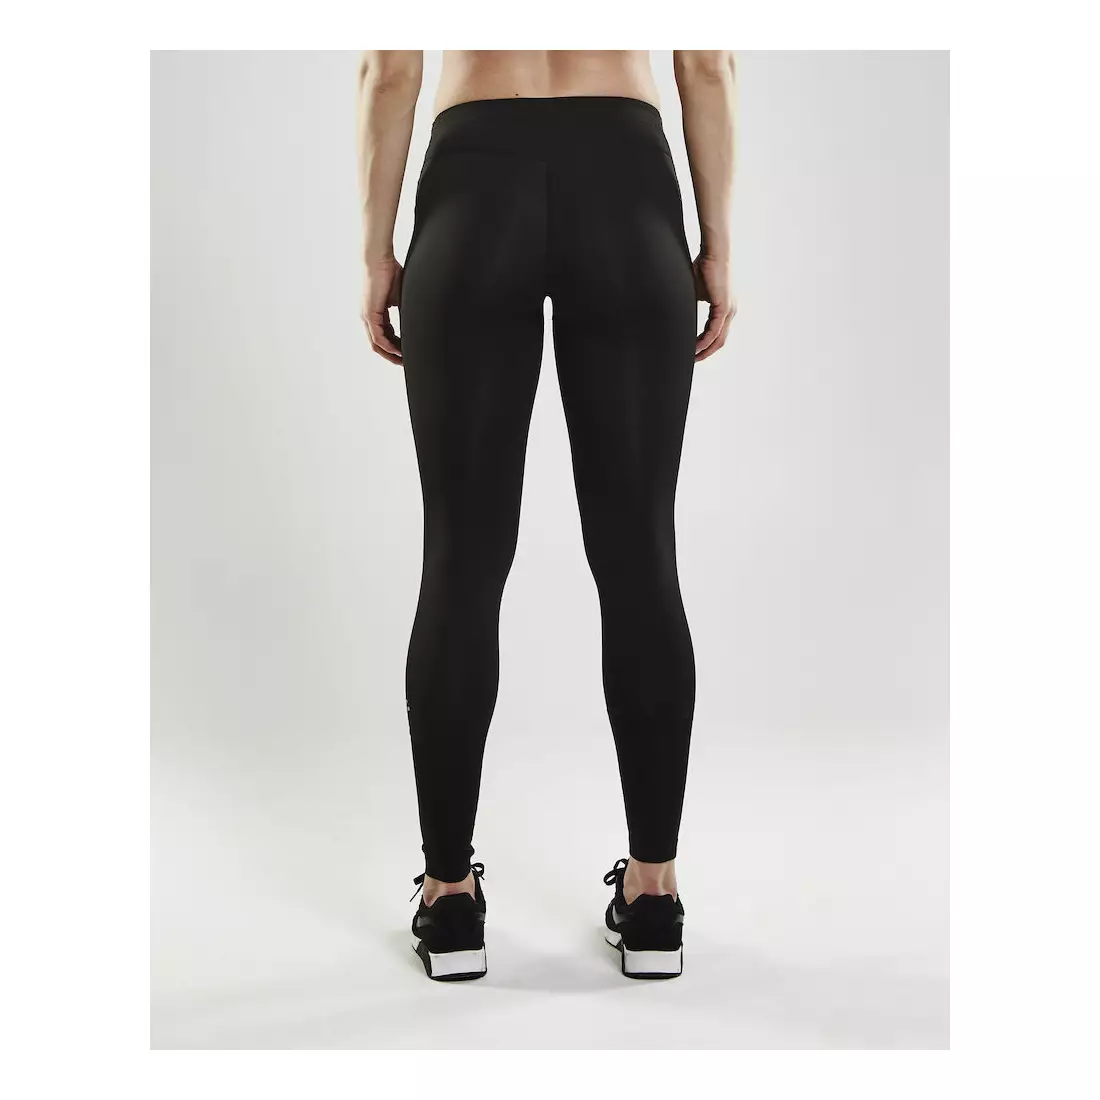  CRAFT pantaloni de antrenament pentru alergare pentru femei EAZE Tights 1905881-999000